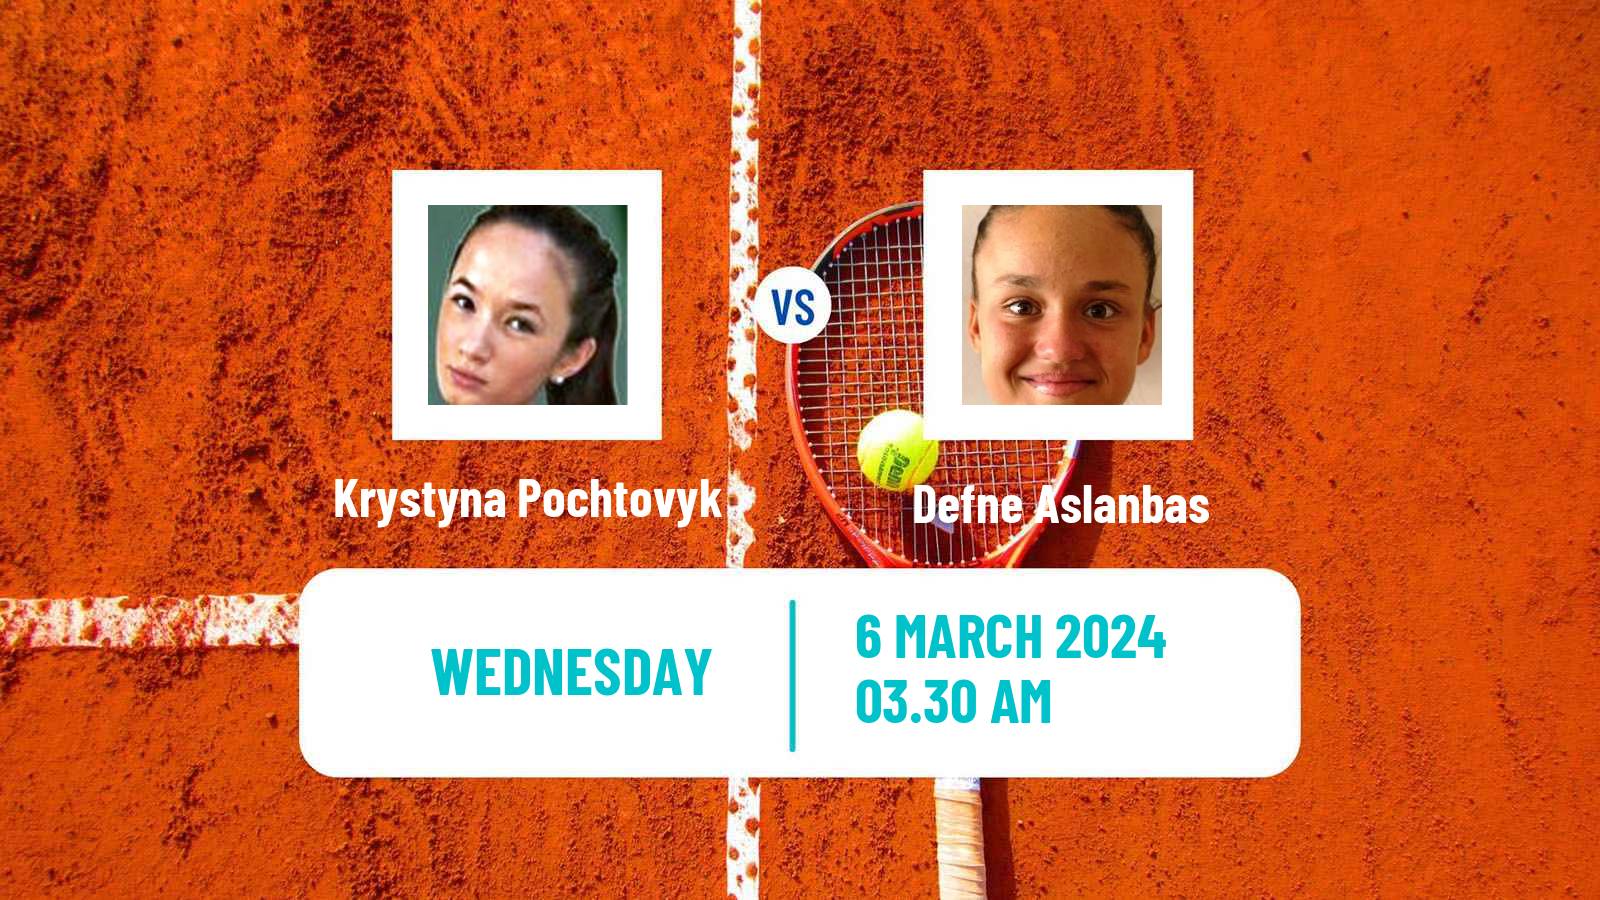 Tennis ITF W15 Antalya 4 Women Krystyna Pochtovyk - Defne Aslanbas